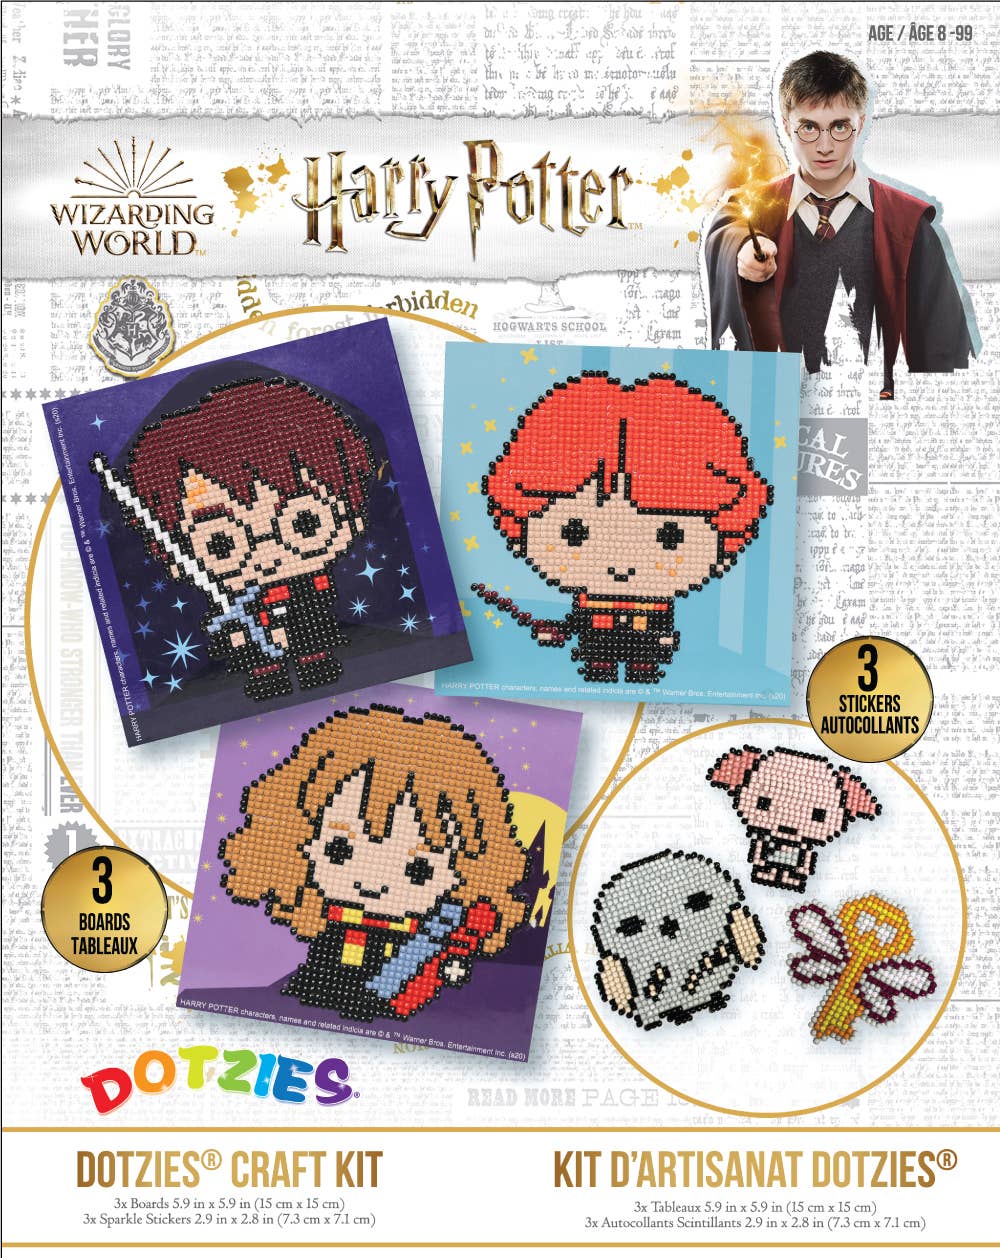 Adornos para lápices de Harry Potter | 12 regalos de Harry Potter en 1  paquete | Colecciona los 16 juguetes de Harry Potter | Accesorios de Harry